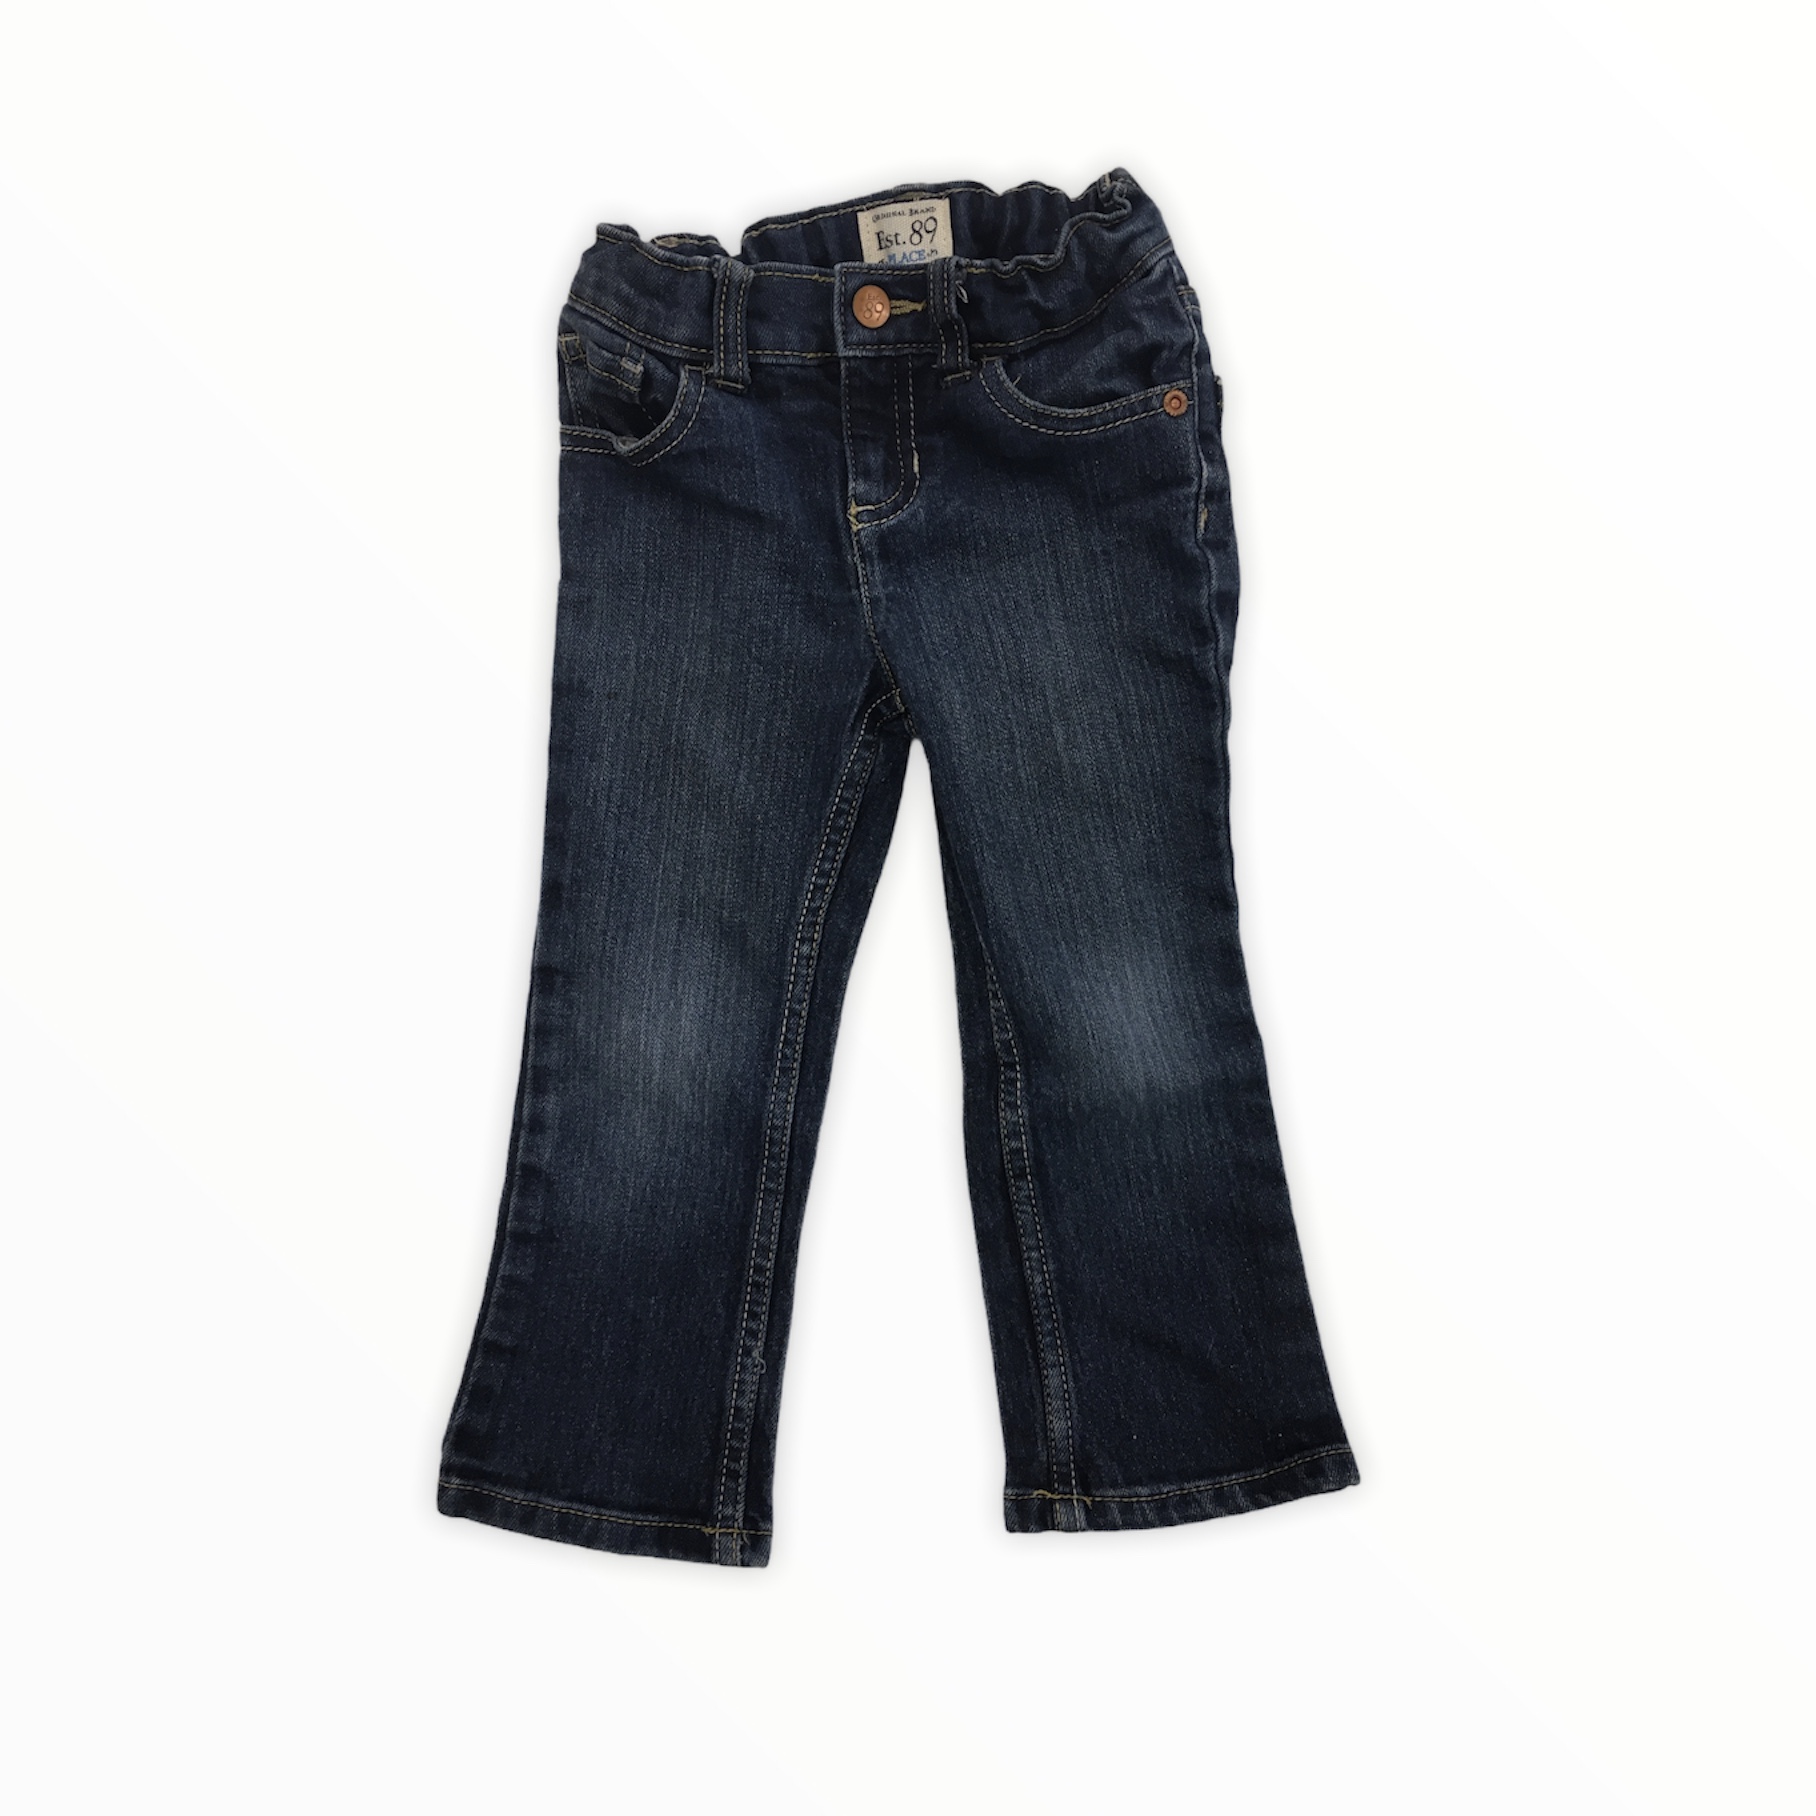 Brand New Lady's Genuine Jordache Denim Blue Jeans Size 11/12